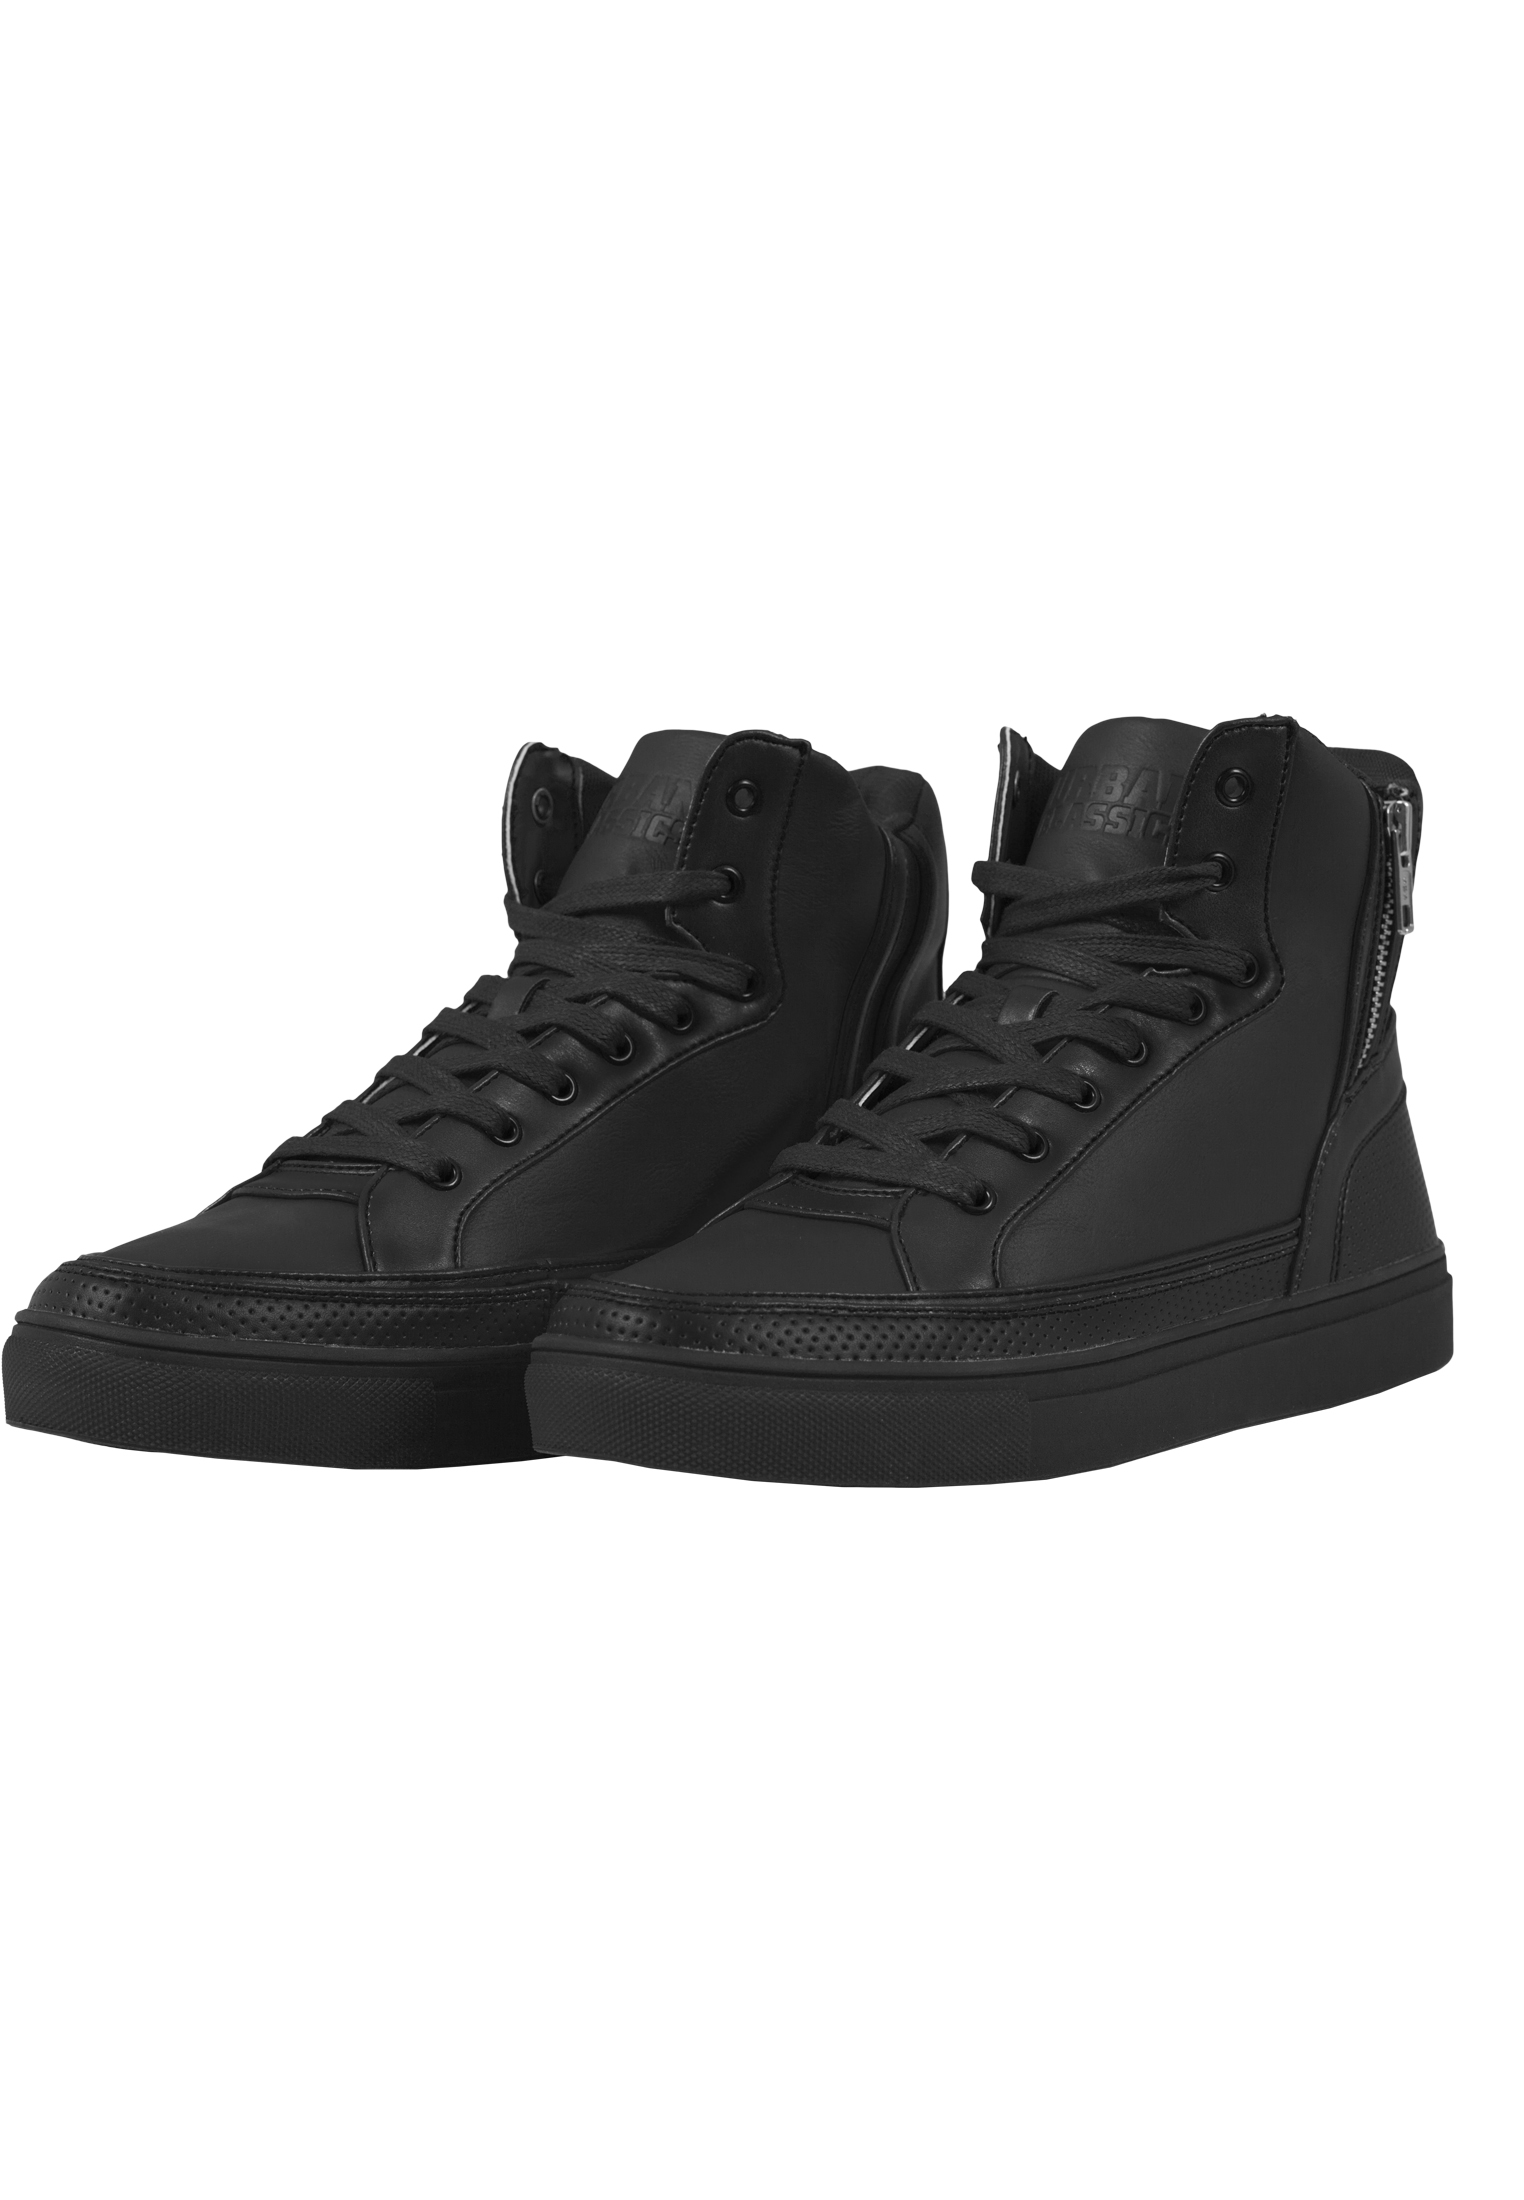 Urban Classics sneaker zipper high top tb1271 Black 